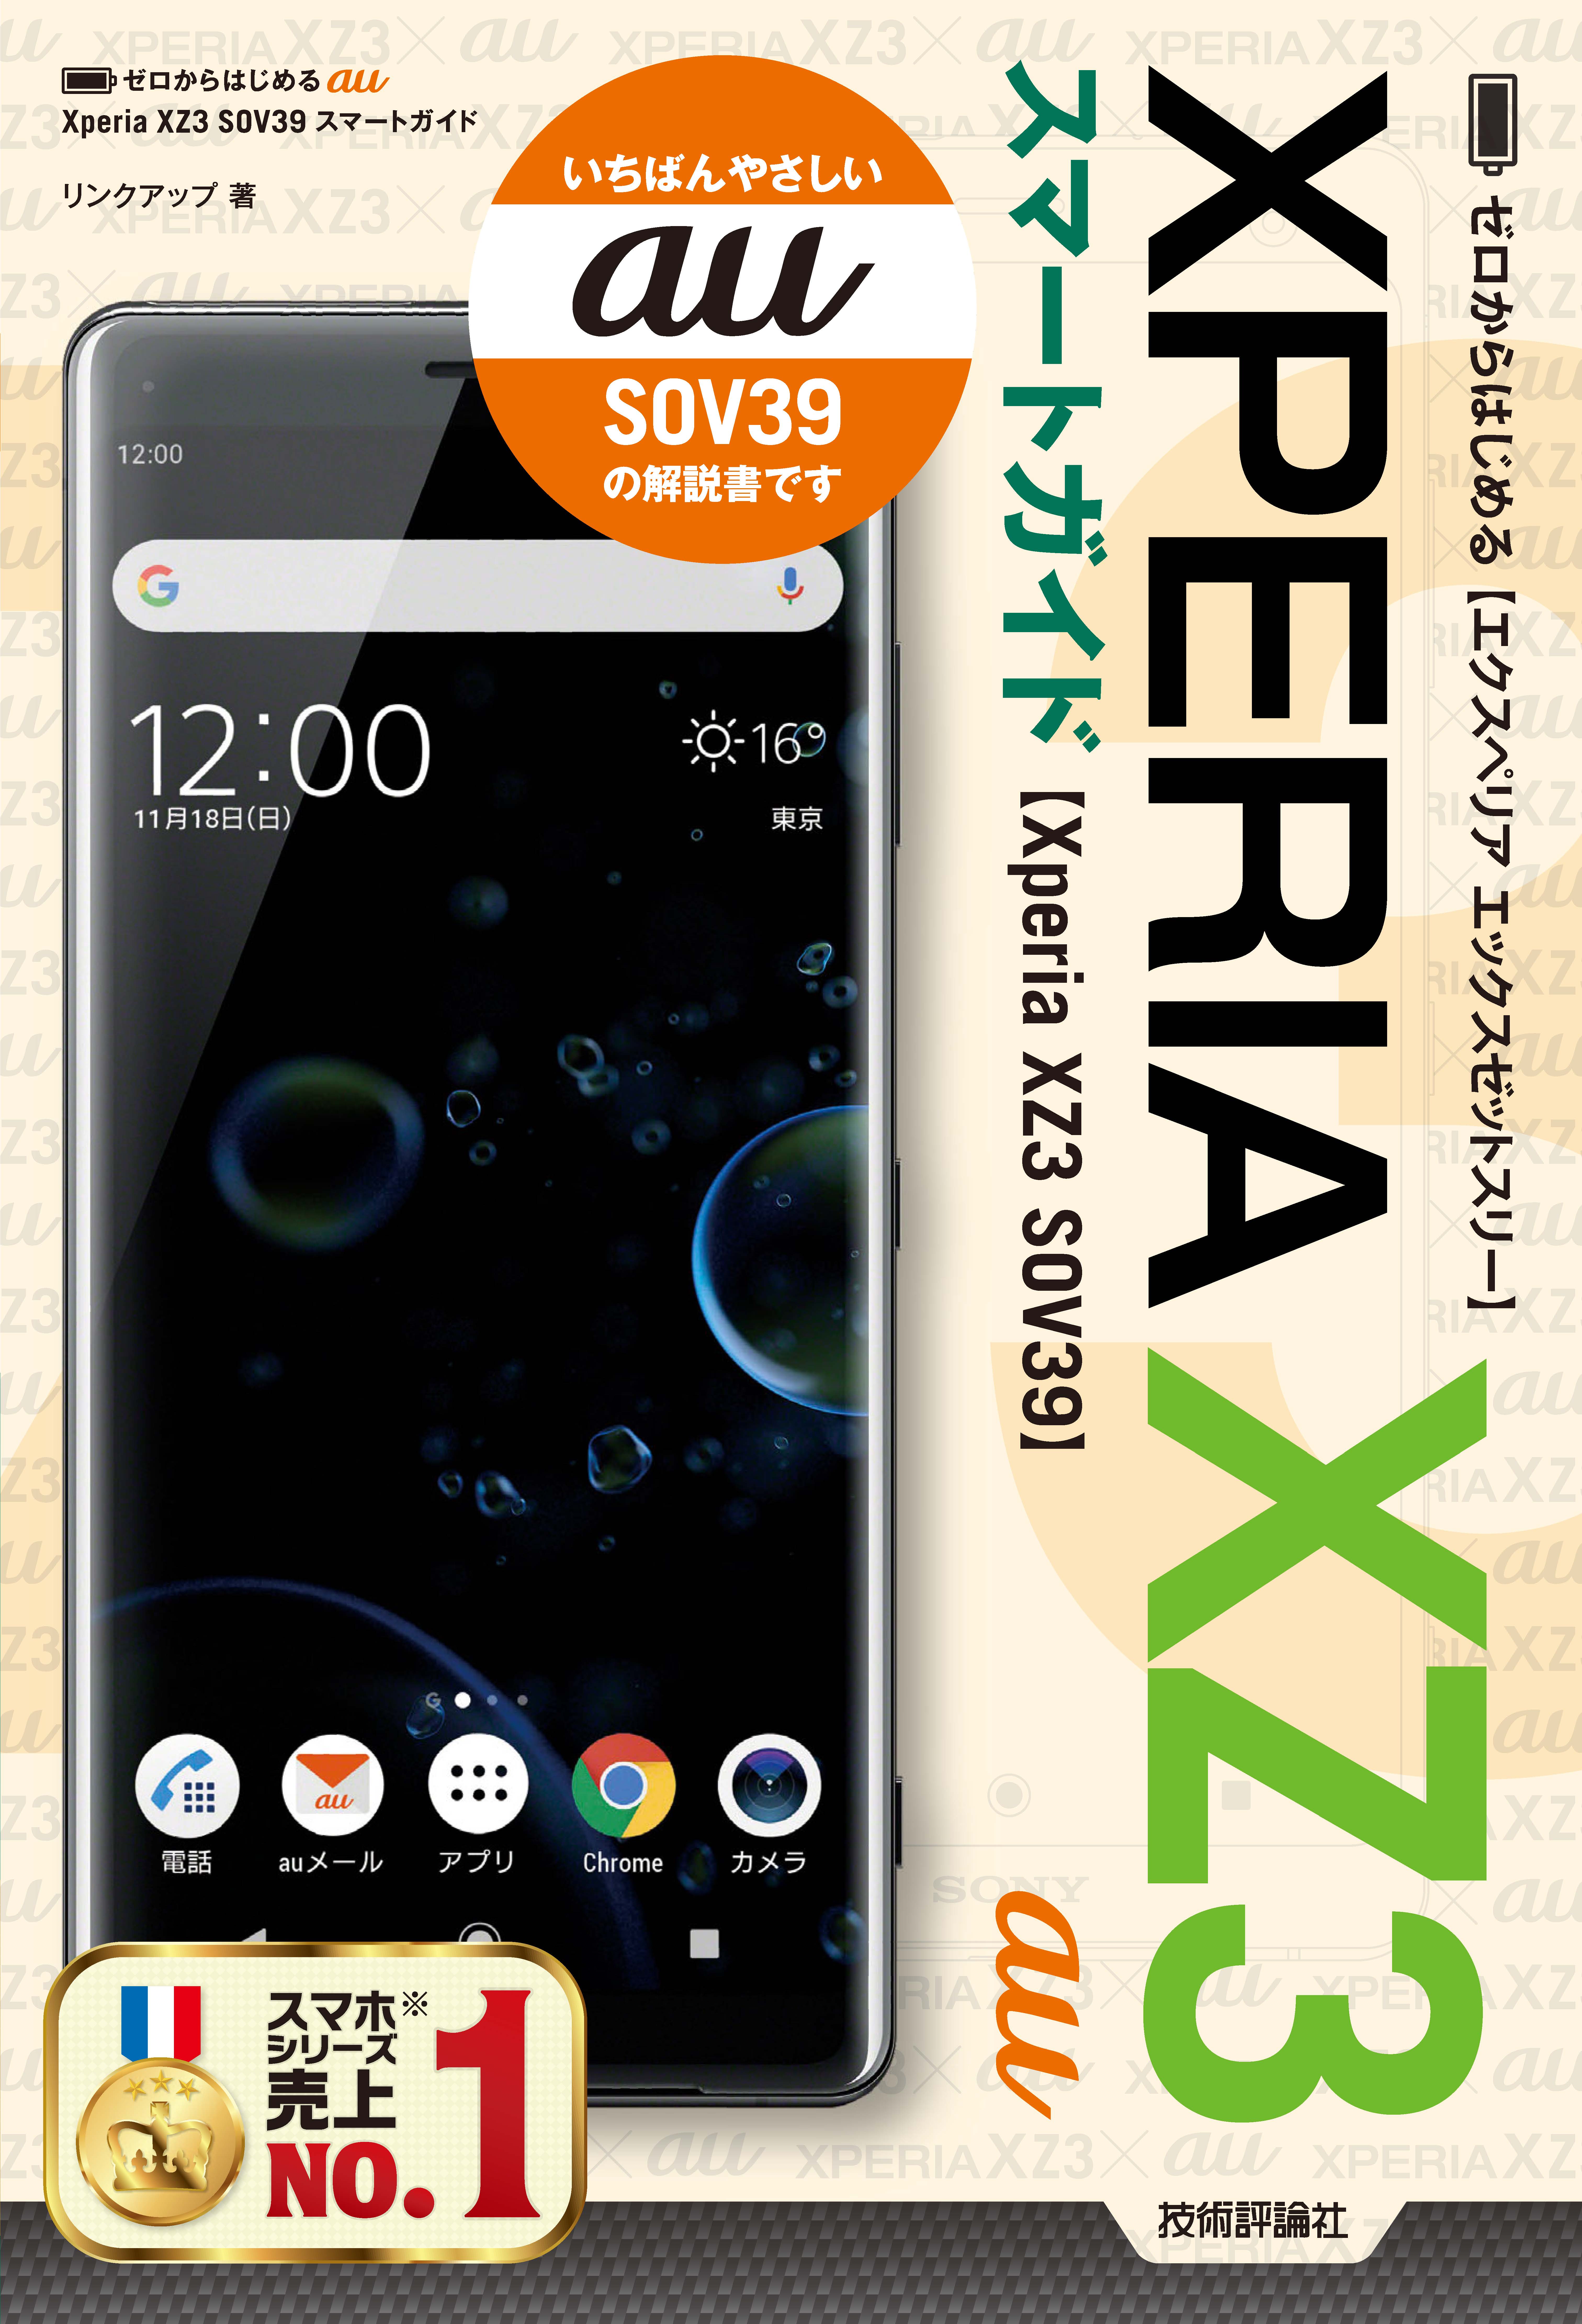 ゼロからはじめる au Xperia XZ3 SOV39 スマートガイド - リンクアップ ...